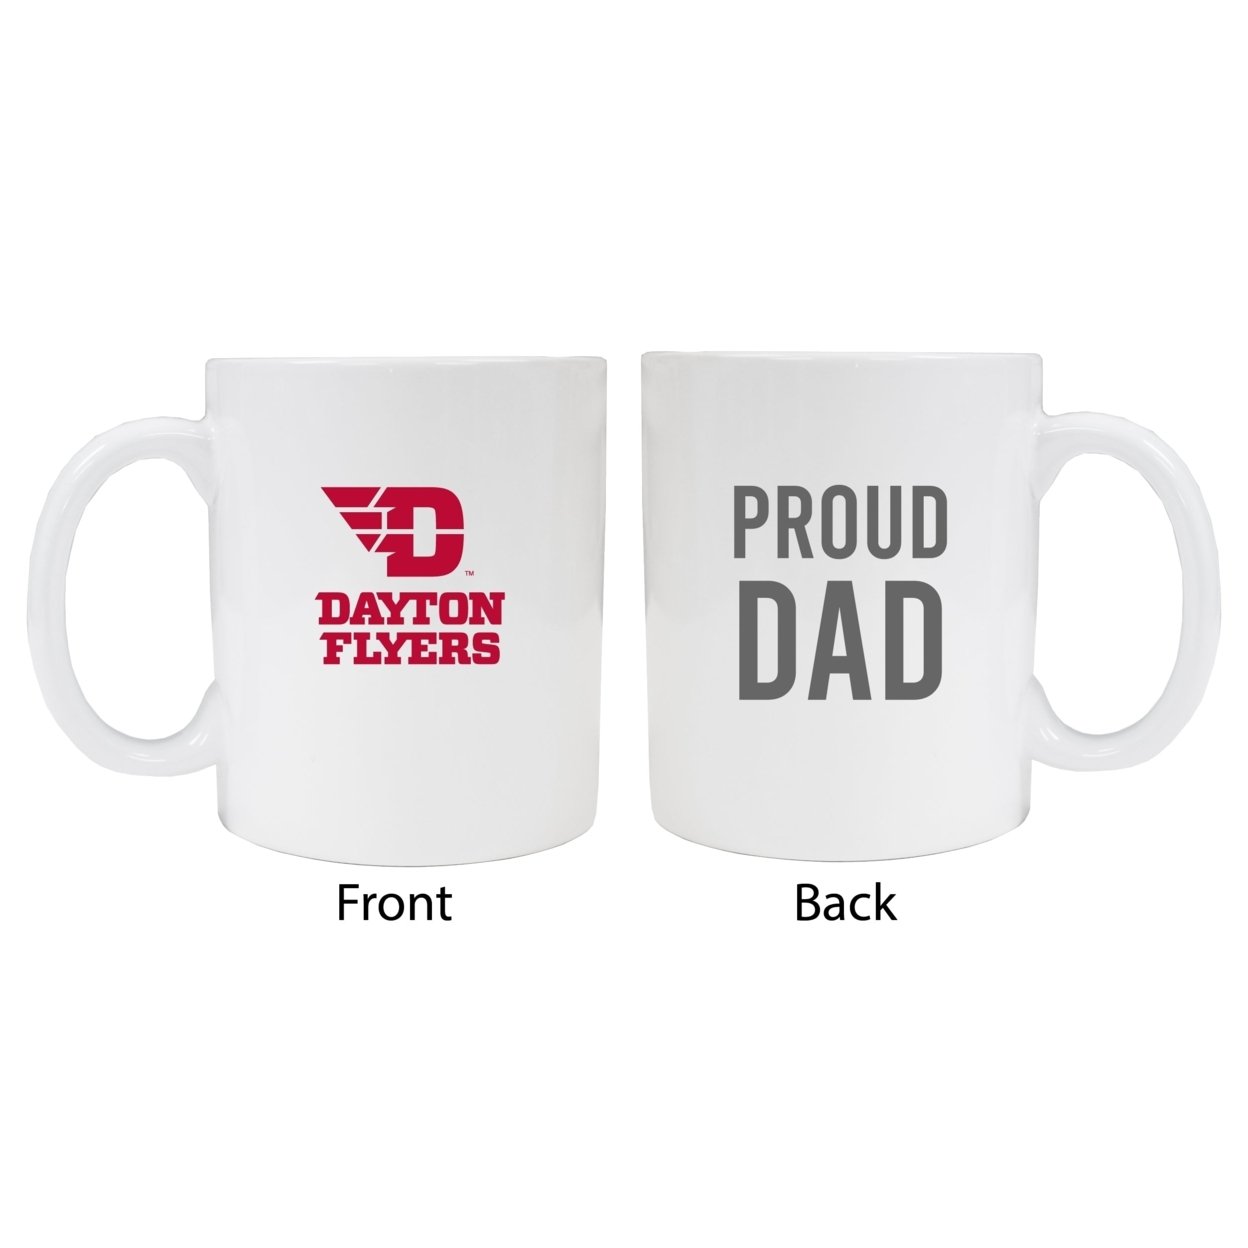 Dayton Flyers Proud Dad Ceramic Coffee Mug - White